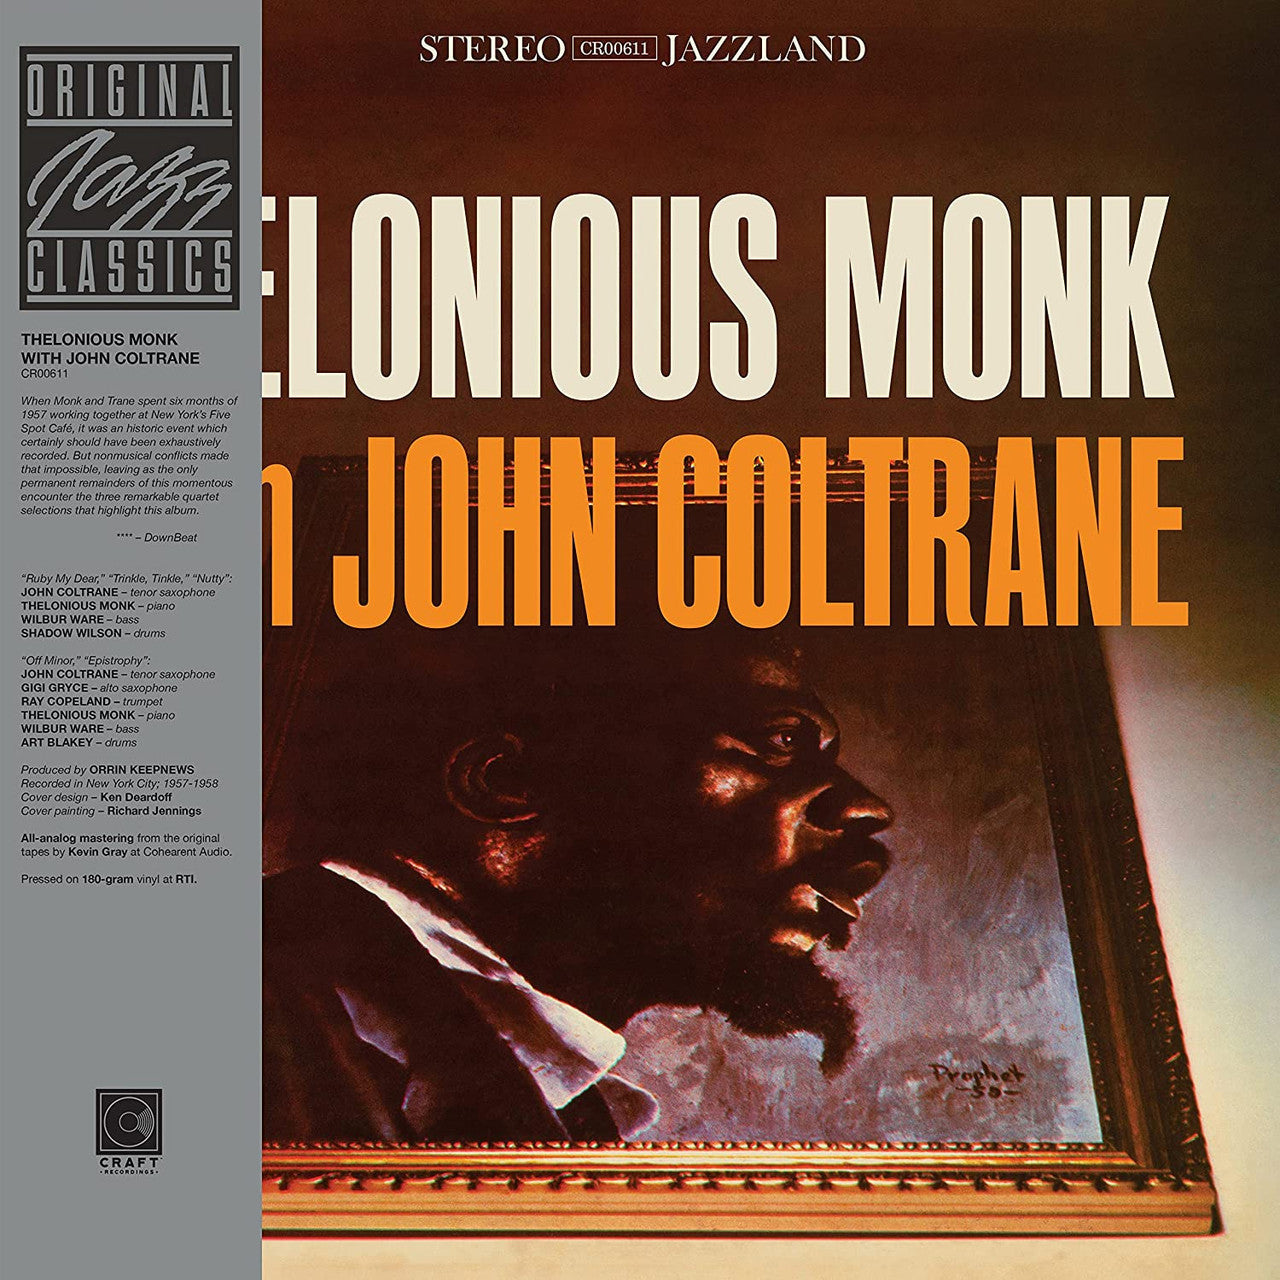 Thelonious Monk, John Coltrane - Thelonious Monk with John Coltrane - OJC LP